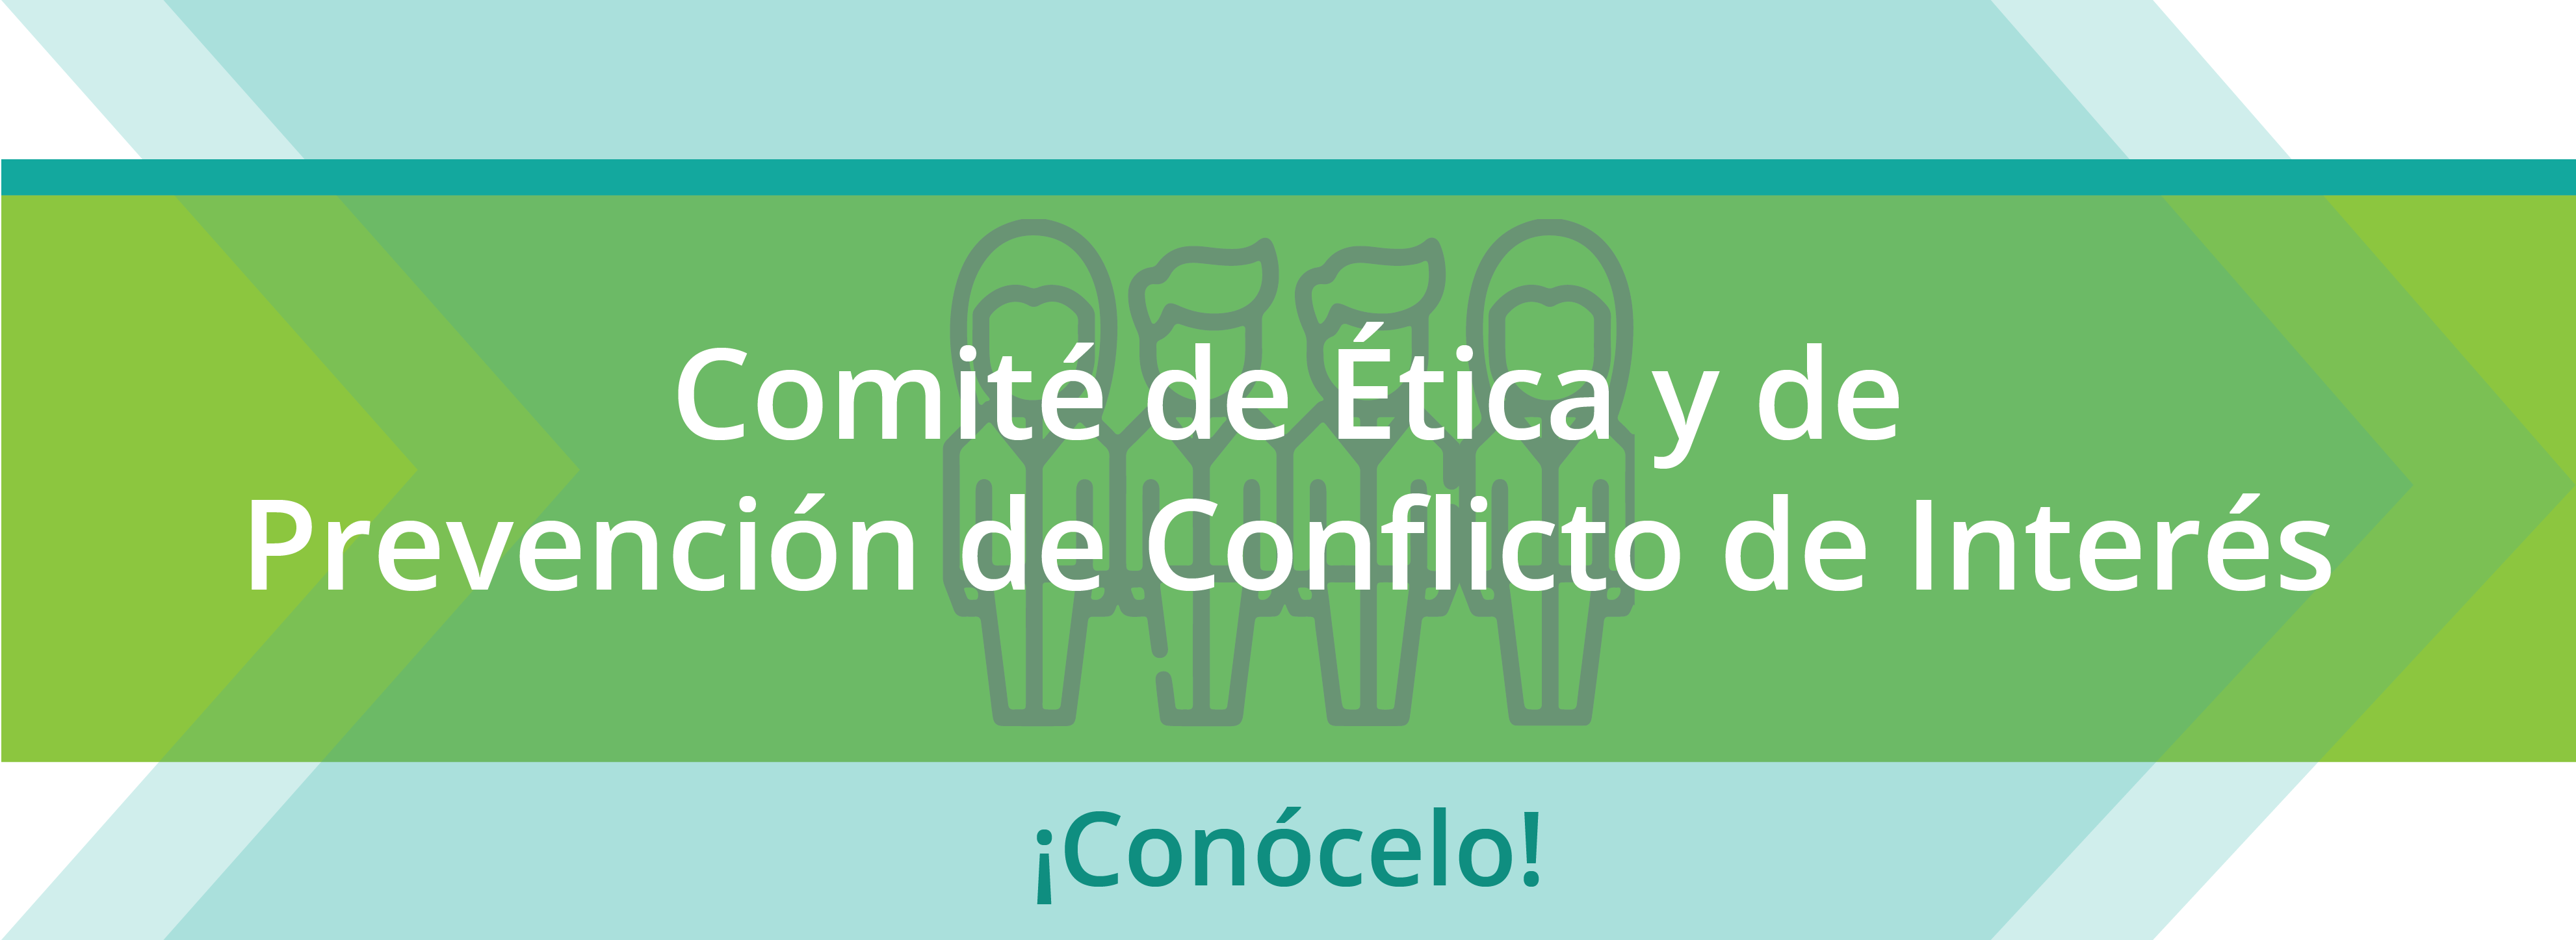 Comite_de_Etica_y_de_prevencion_de_conflicto_de_interes_Infografia_banner_web